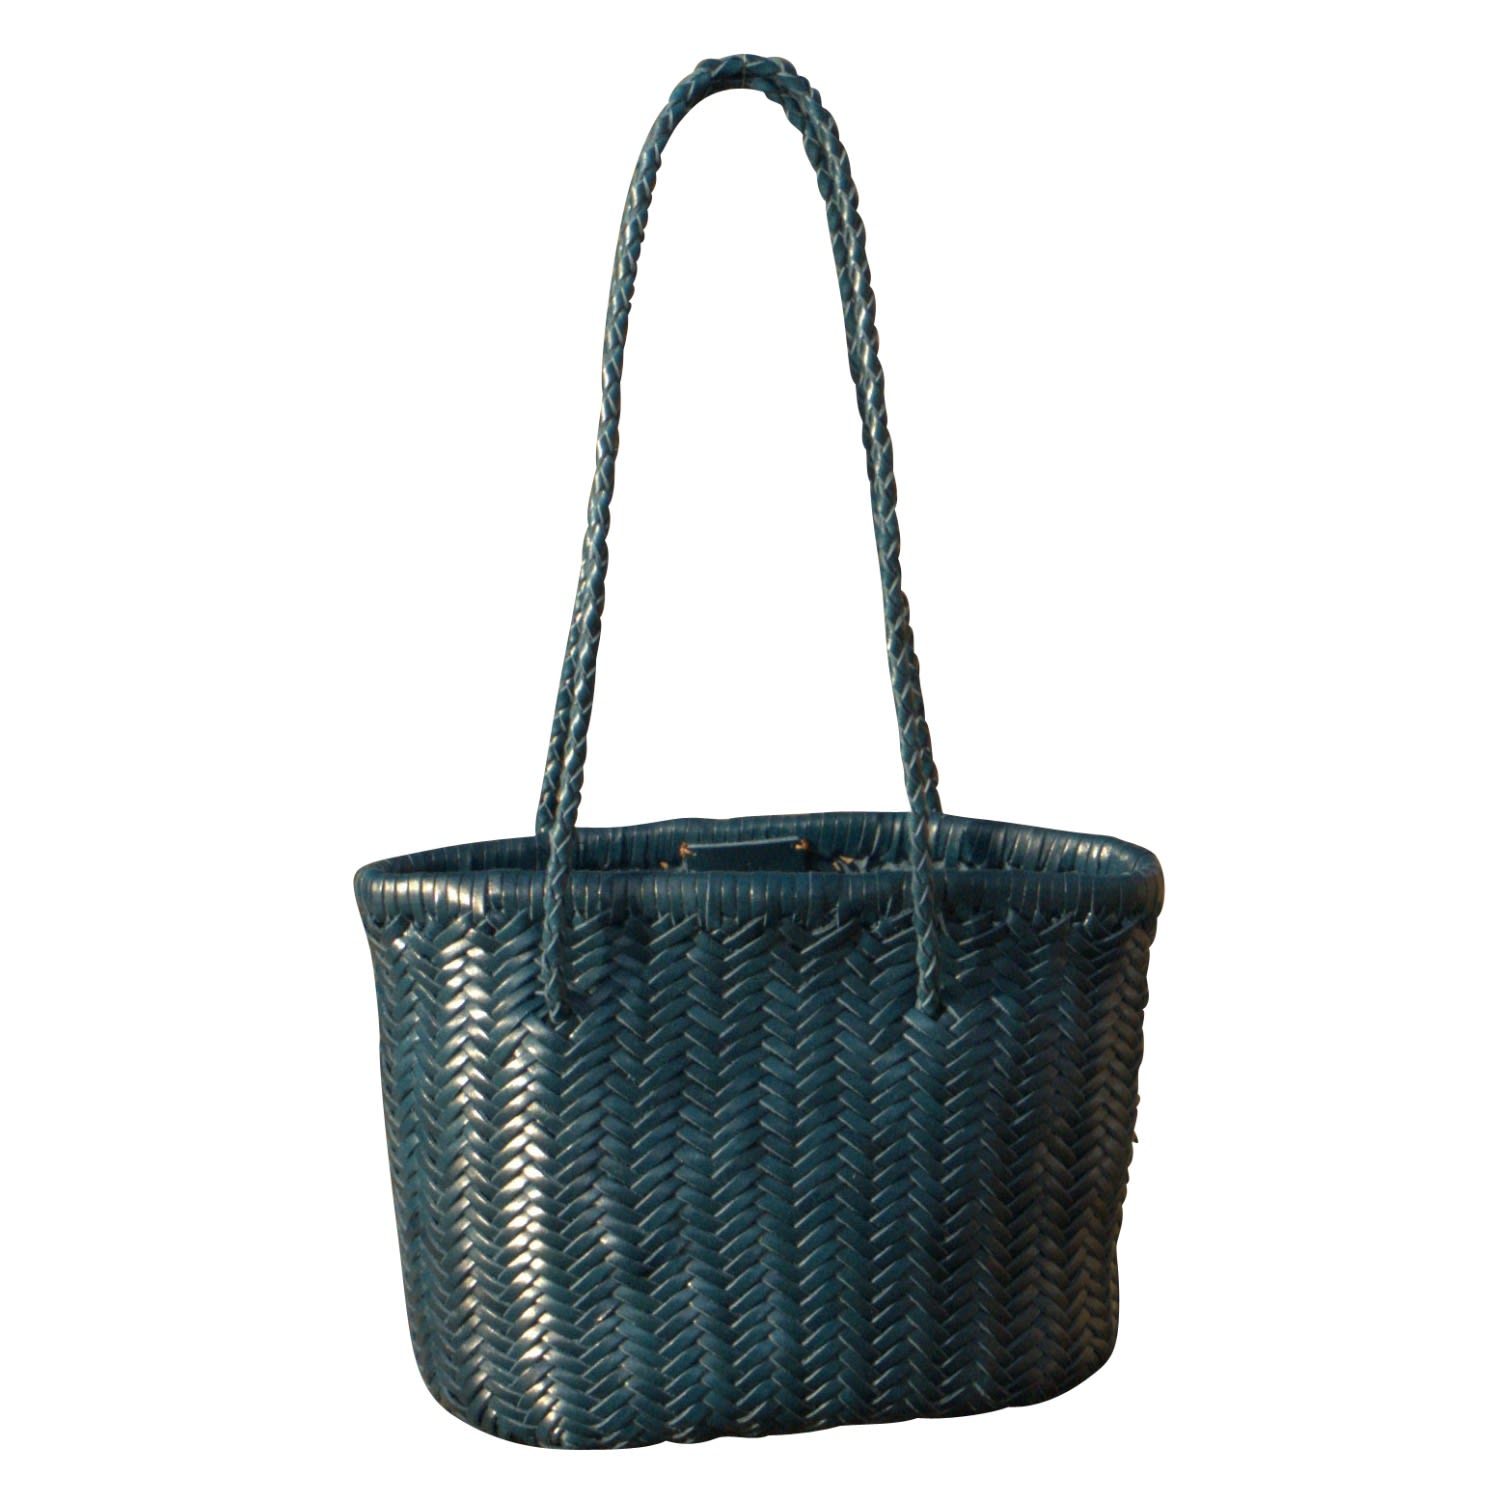 Women’s Zigzag Woven Leather Handbag In Small Size ‘Carla’ - Blue Rimini